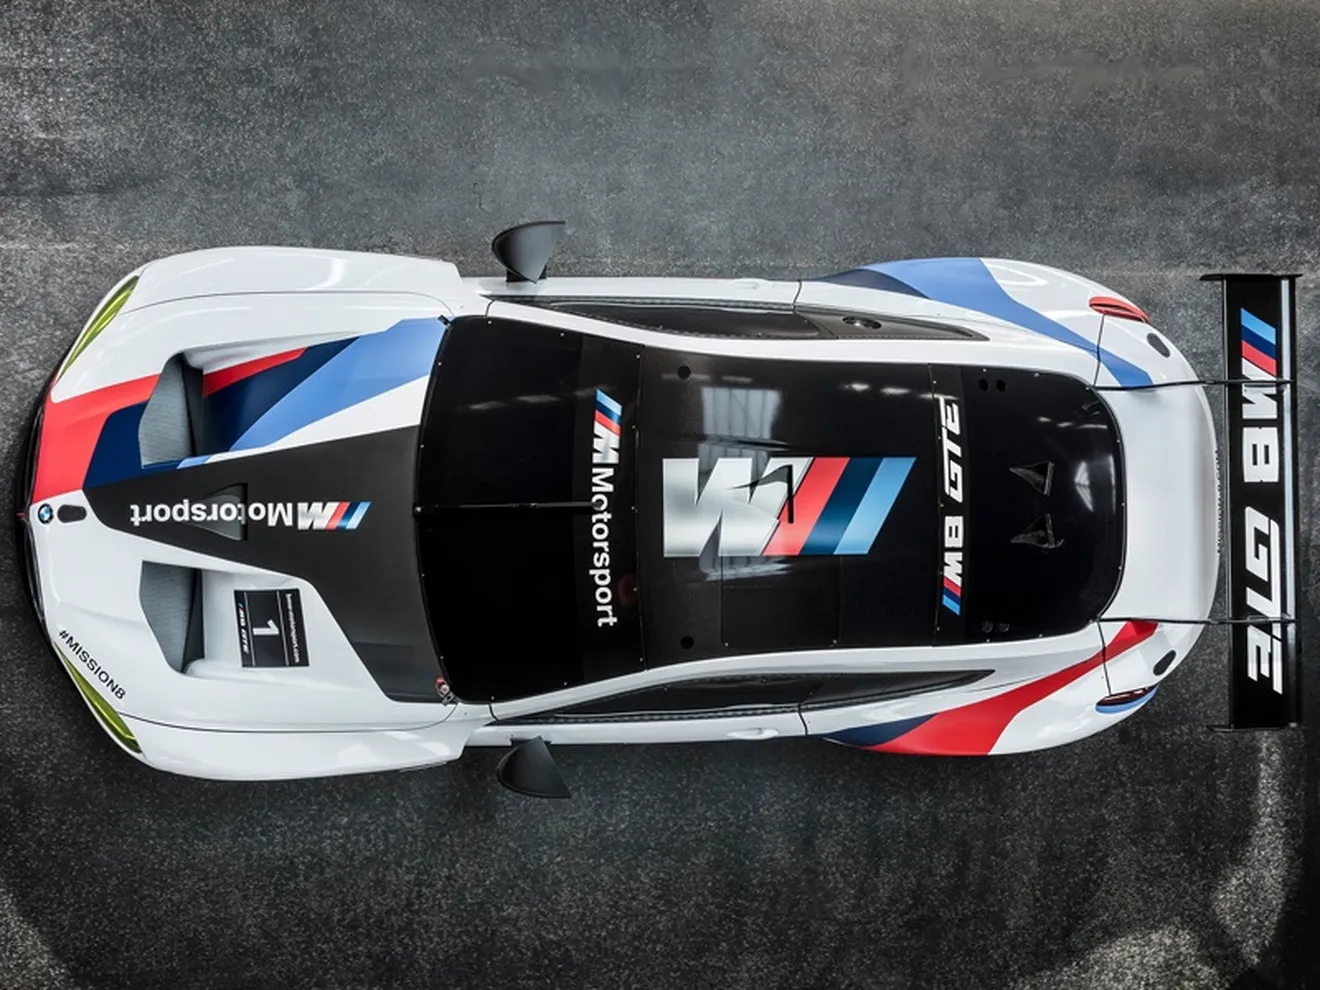 BMW anuncia sus pilotos GTE para el WEC 2018-19 y el IMSA